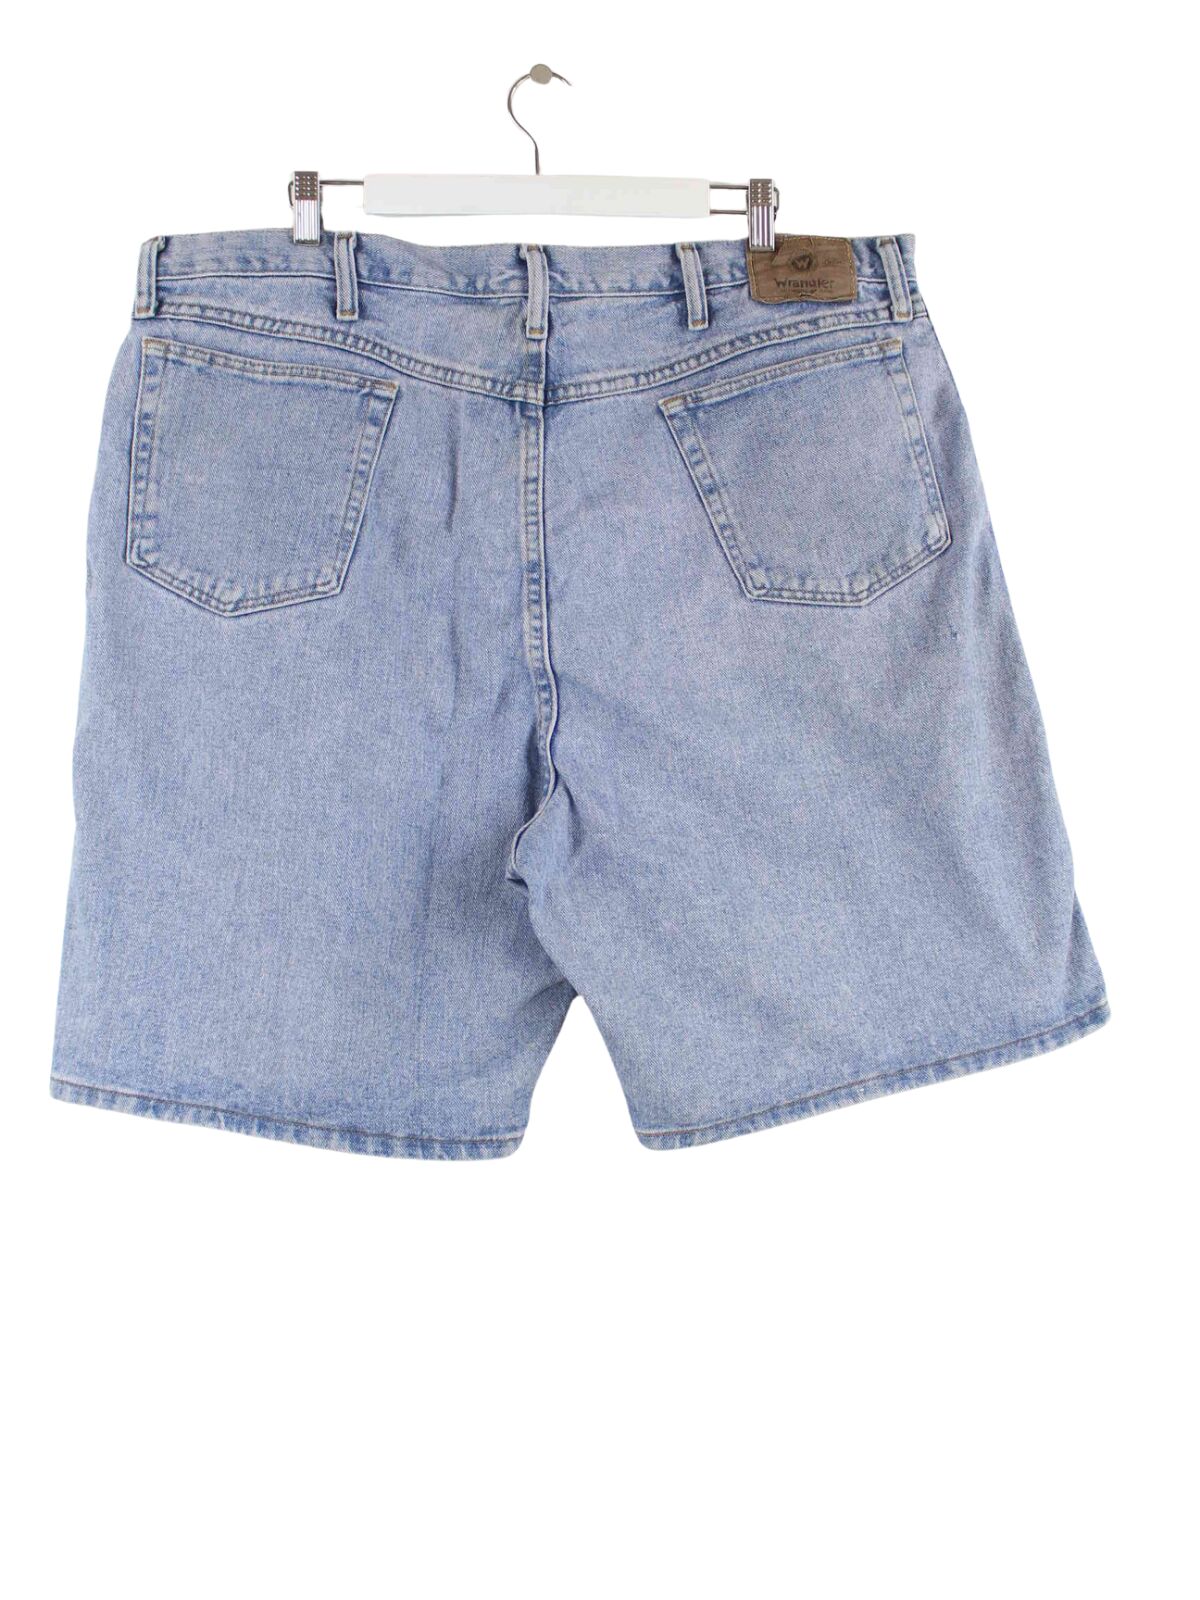 Wrangler Jeans Shorts Blau W42 (back image)